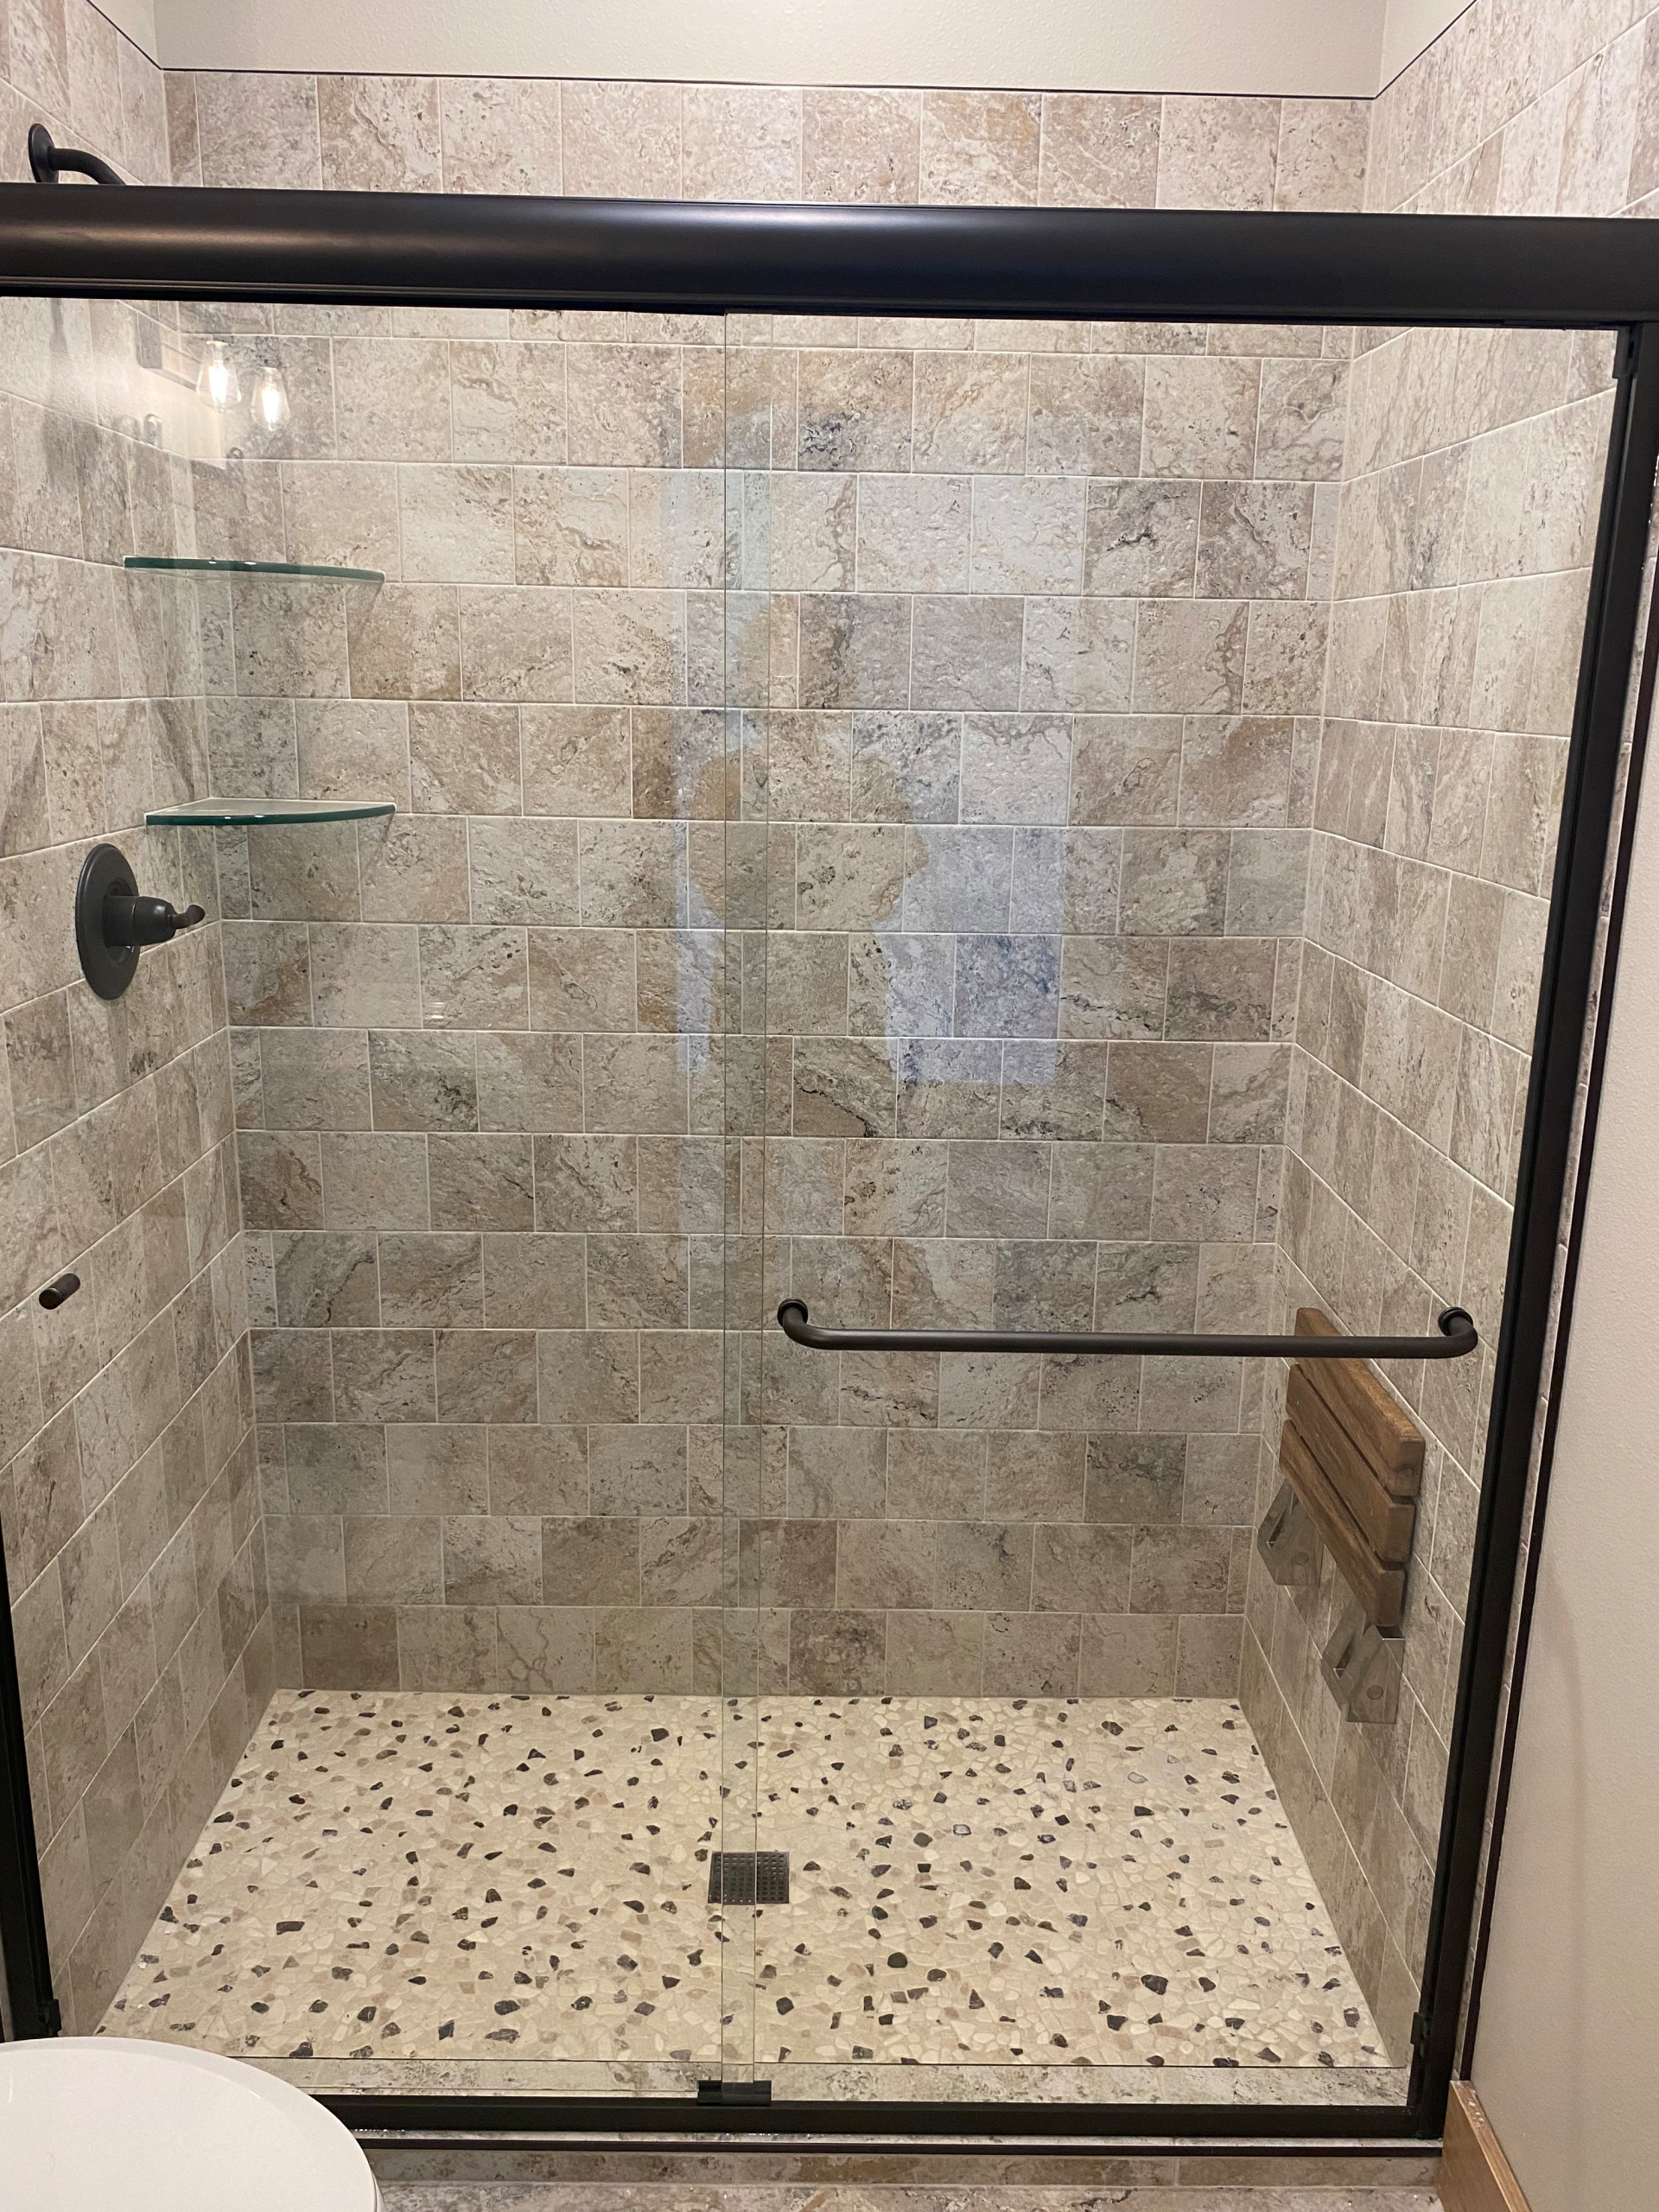 Custom tile shower with foldable teak bench, glass shower shelves, and glass sho